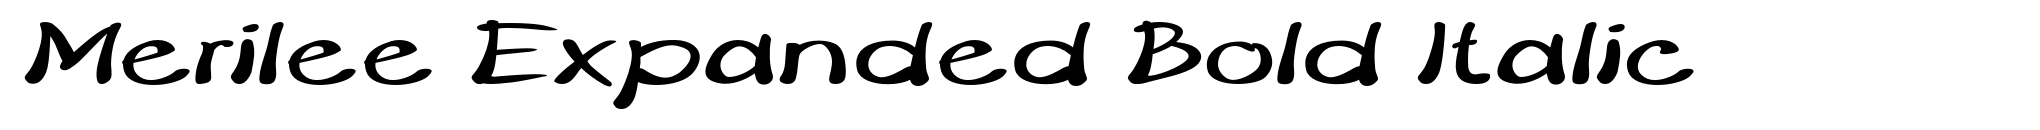 Merilee Expanded Bold Italic image